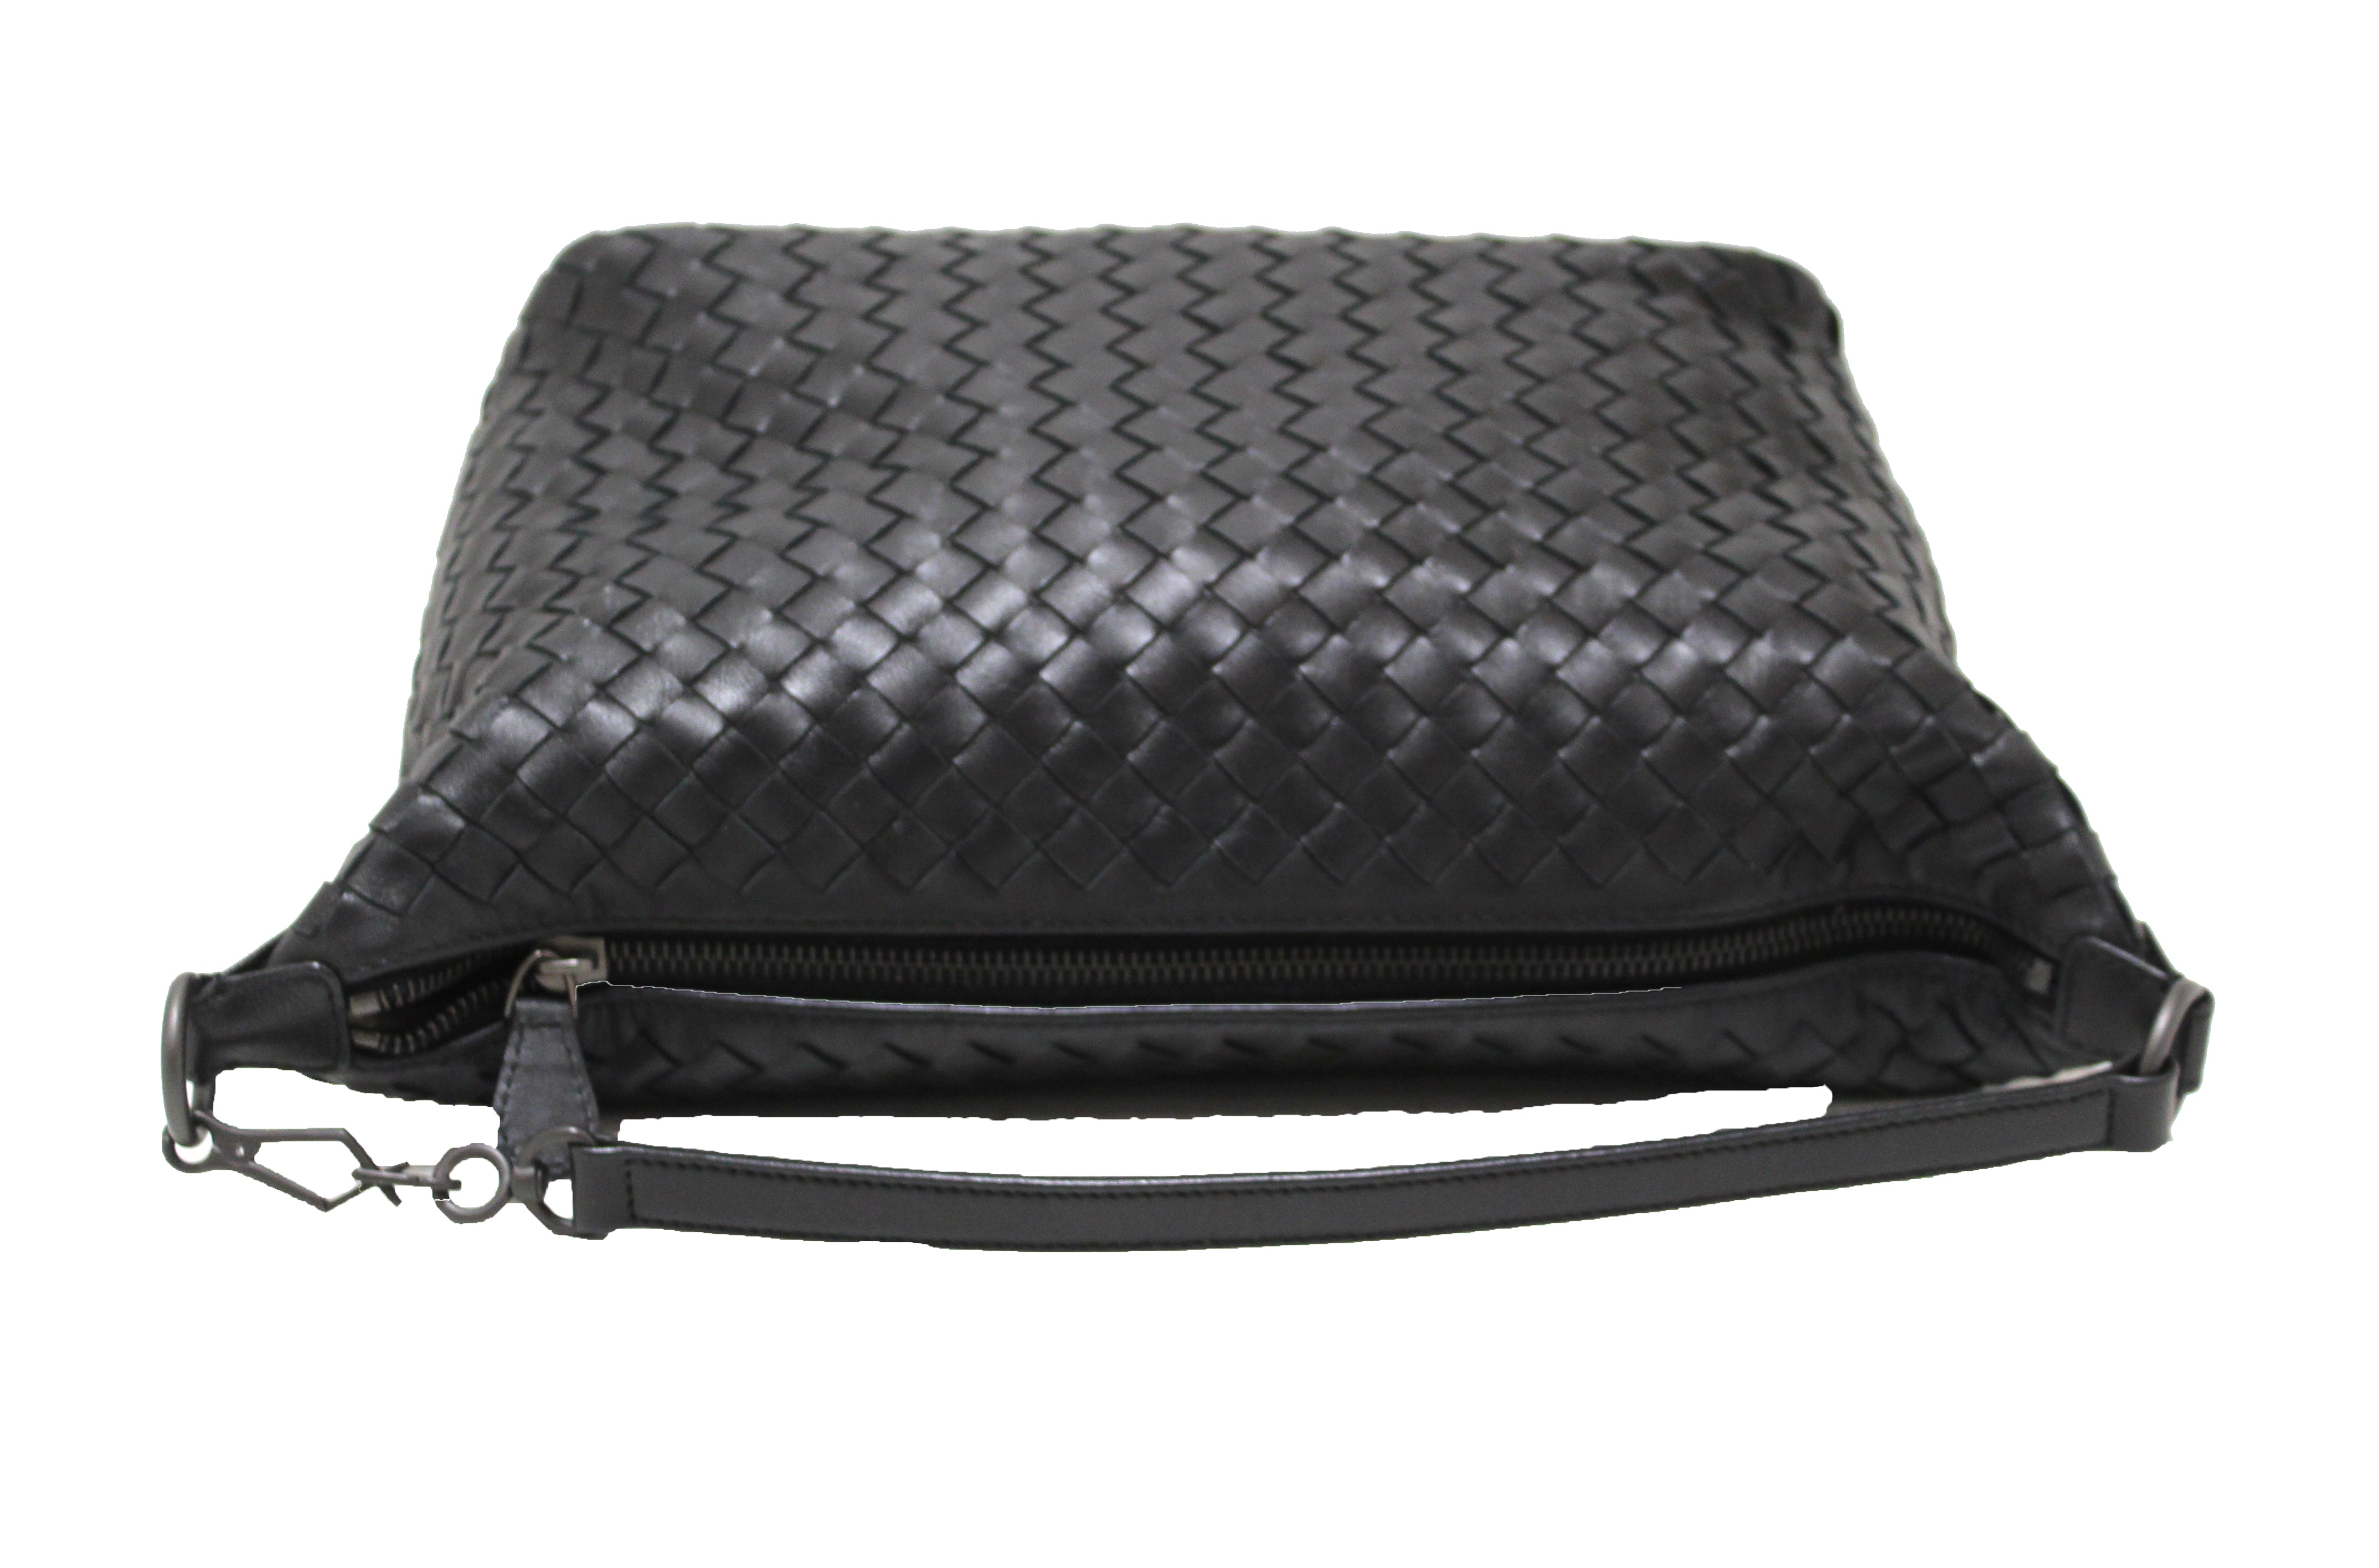 Bottega Veneta Shoulder Bag Black Nappa Intrecciato – Coco Approved Studio